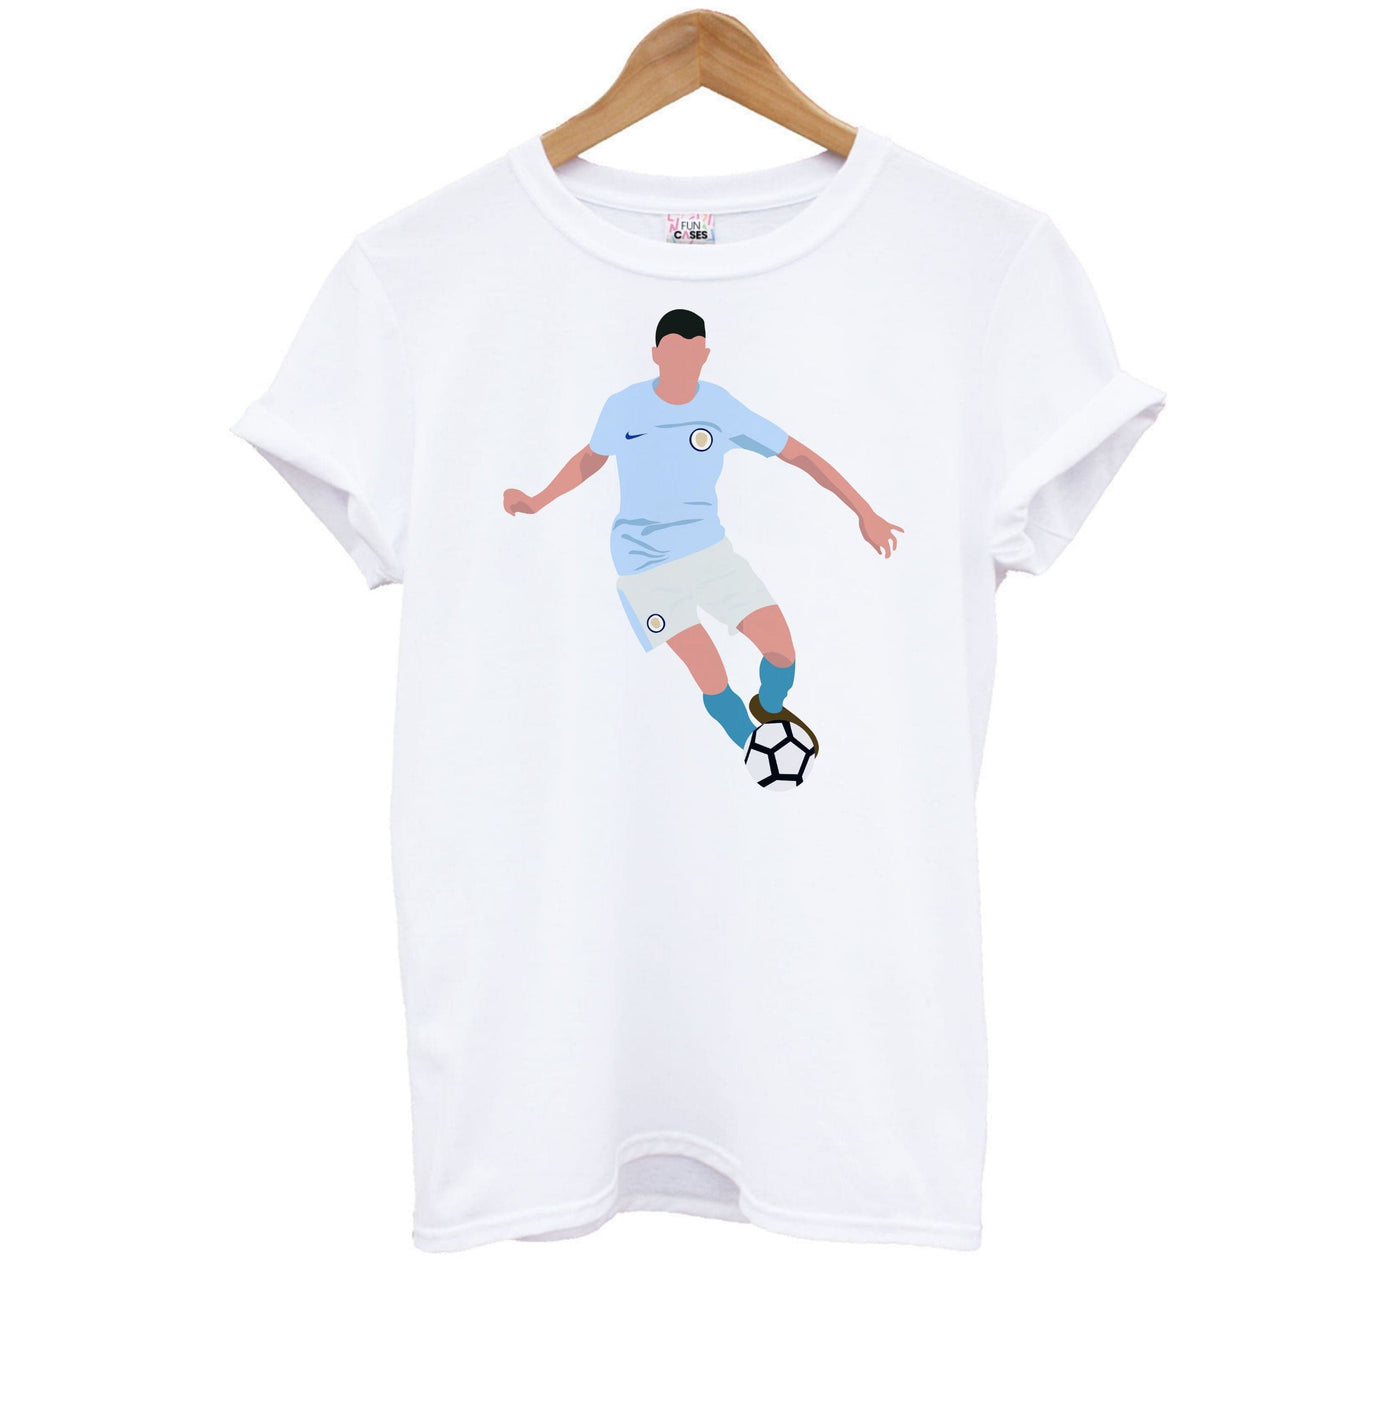 Phil Foden - Football Kids T-Shirt